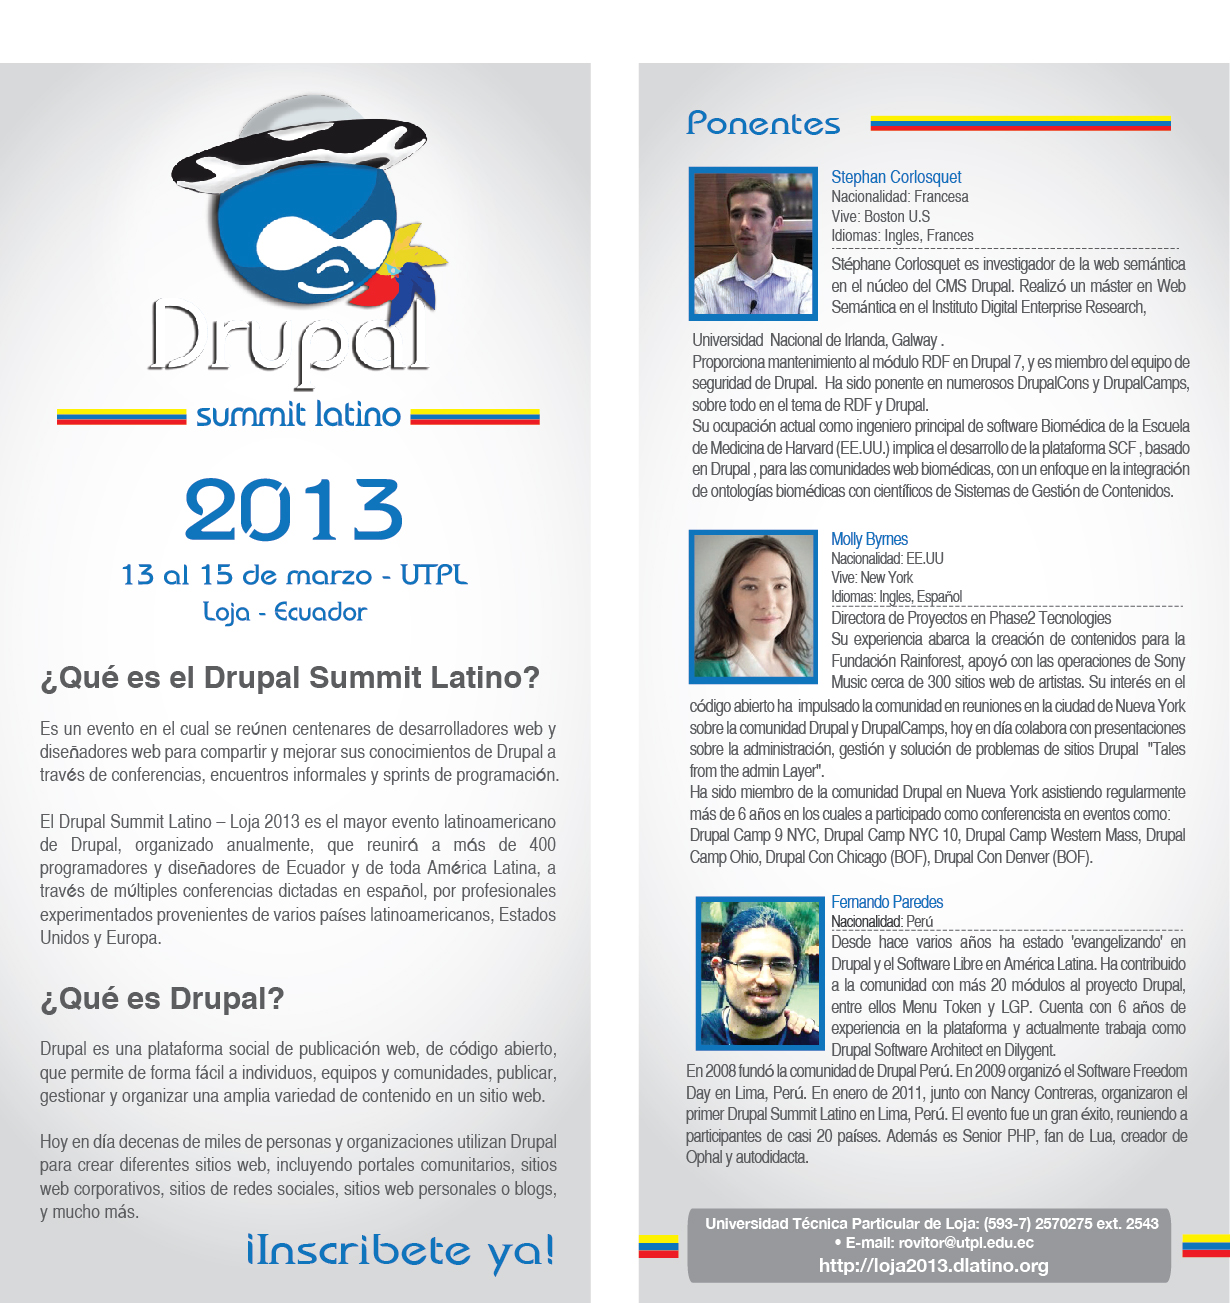 Drupal Summit Latino